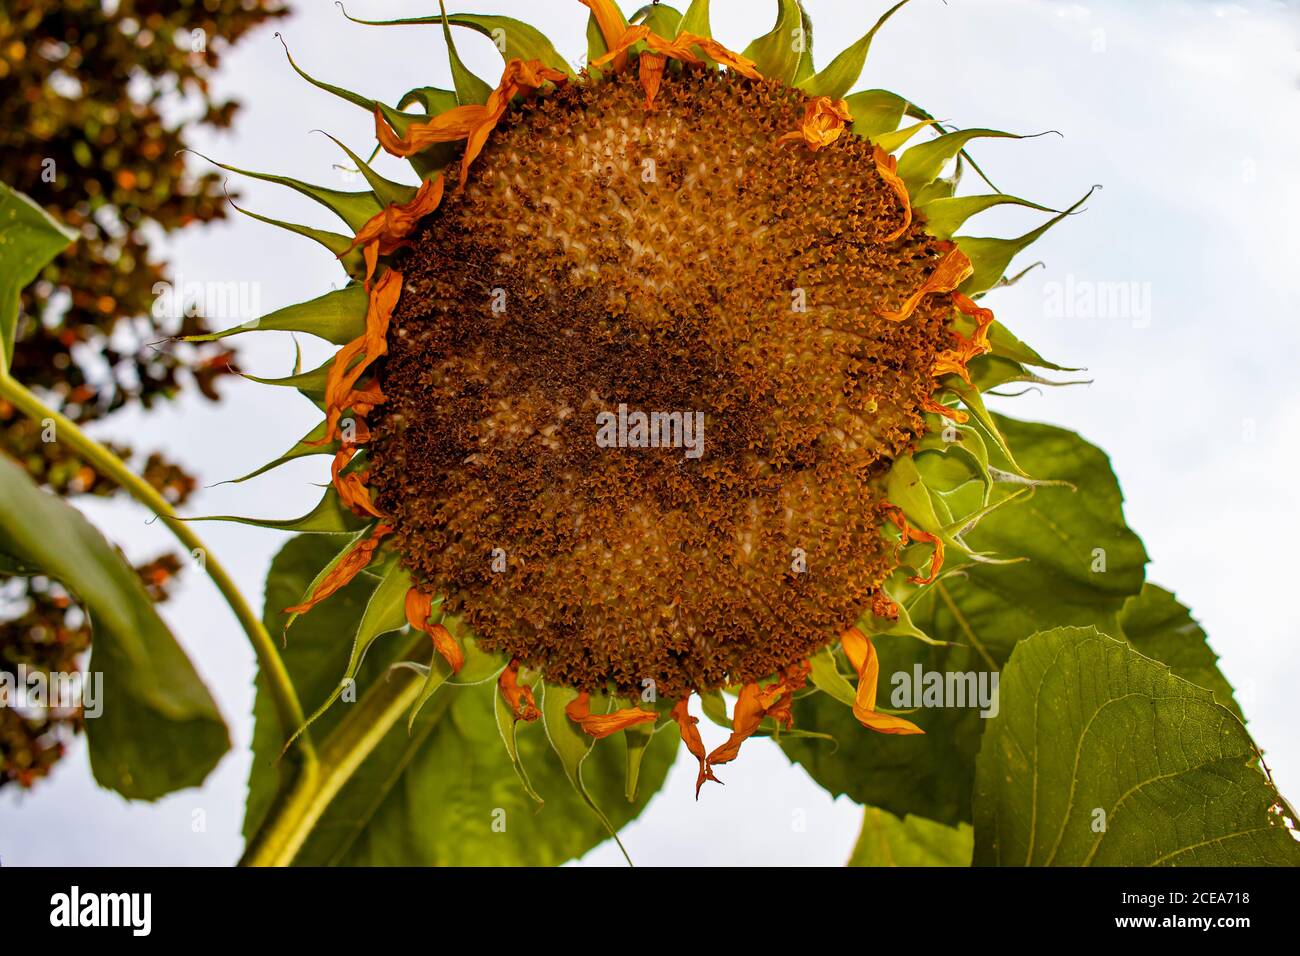 Primo piano immagine di un girasole cresciuto che è rivolto verso il basso verso il suolo. Immagine presa da sotto il fiore mostra i dettagli dei semi, petali A. Foto Stock